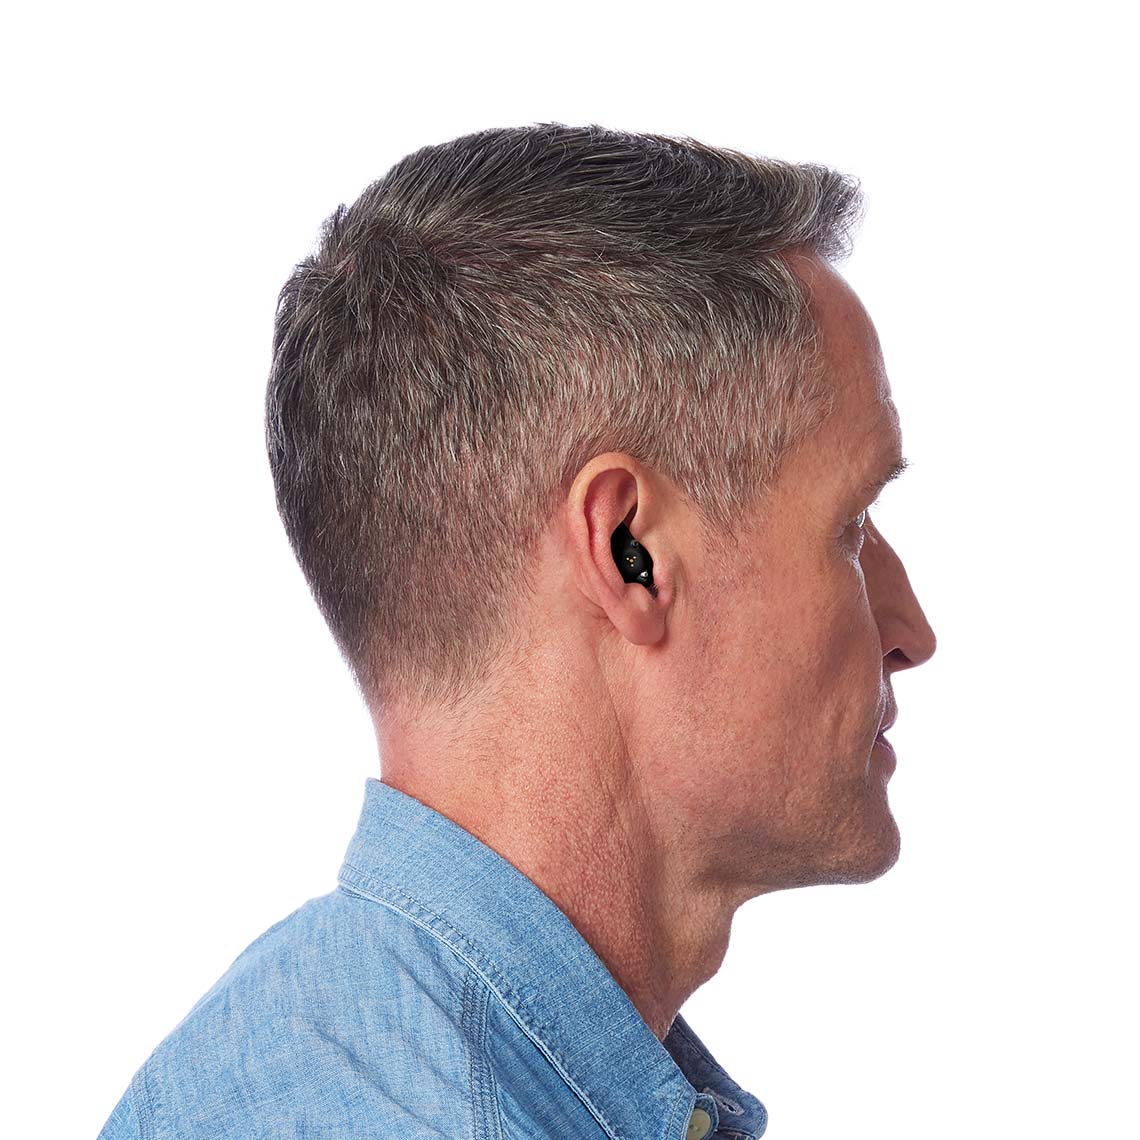 A Black ITE R shown in a man's ear